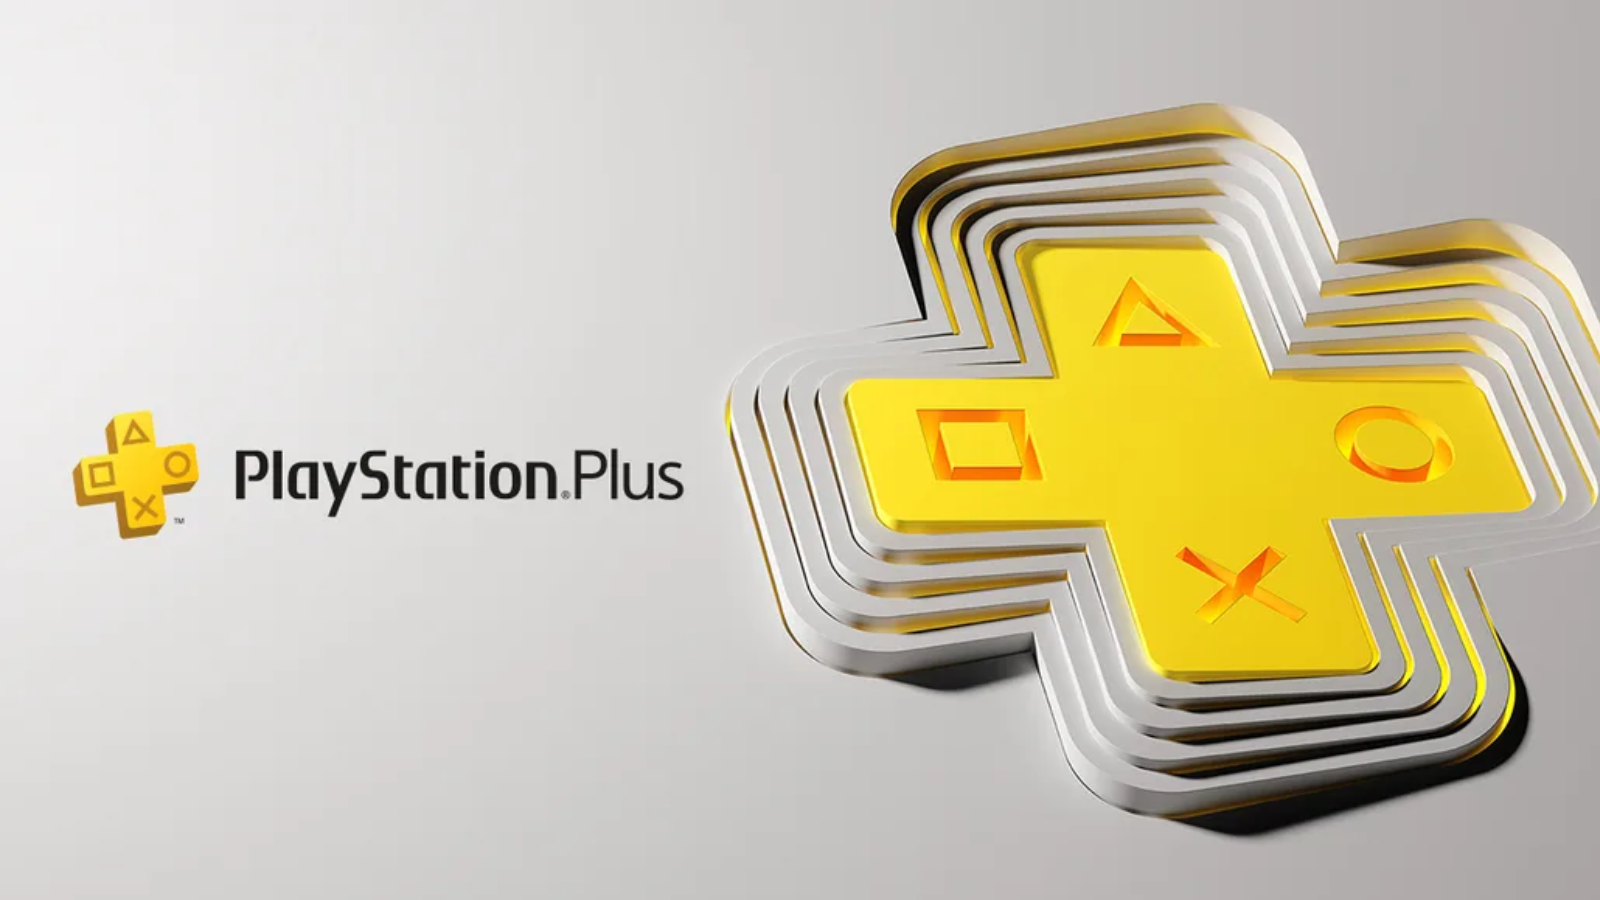 Semana do Gamer: PlayStation traz jogos físicos mais baratos; veja ofertas